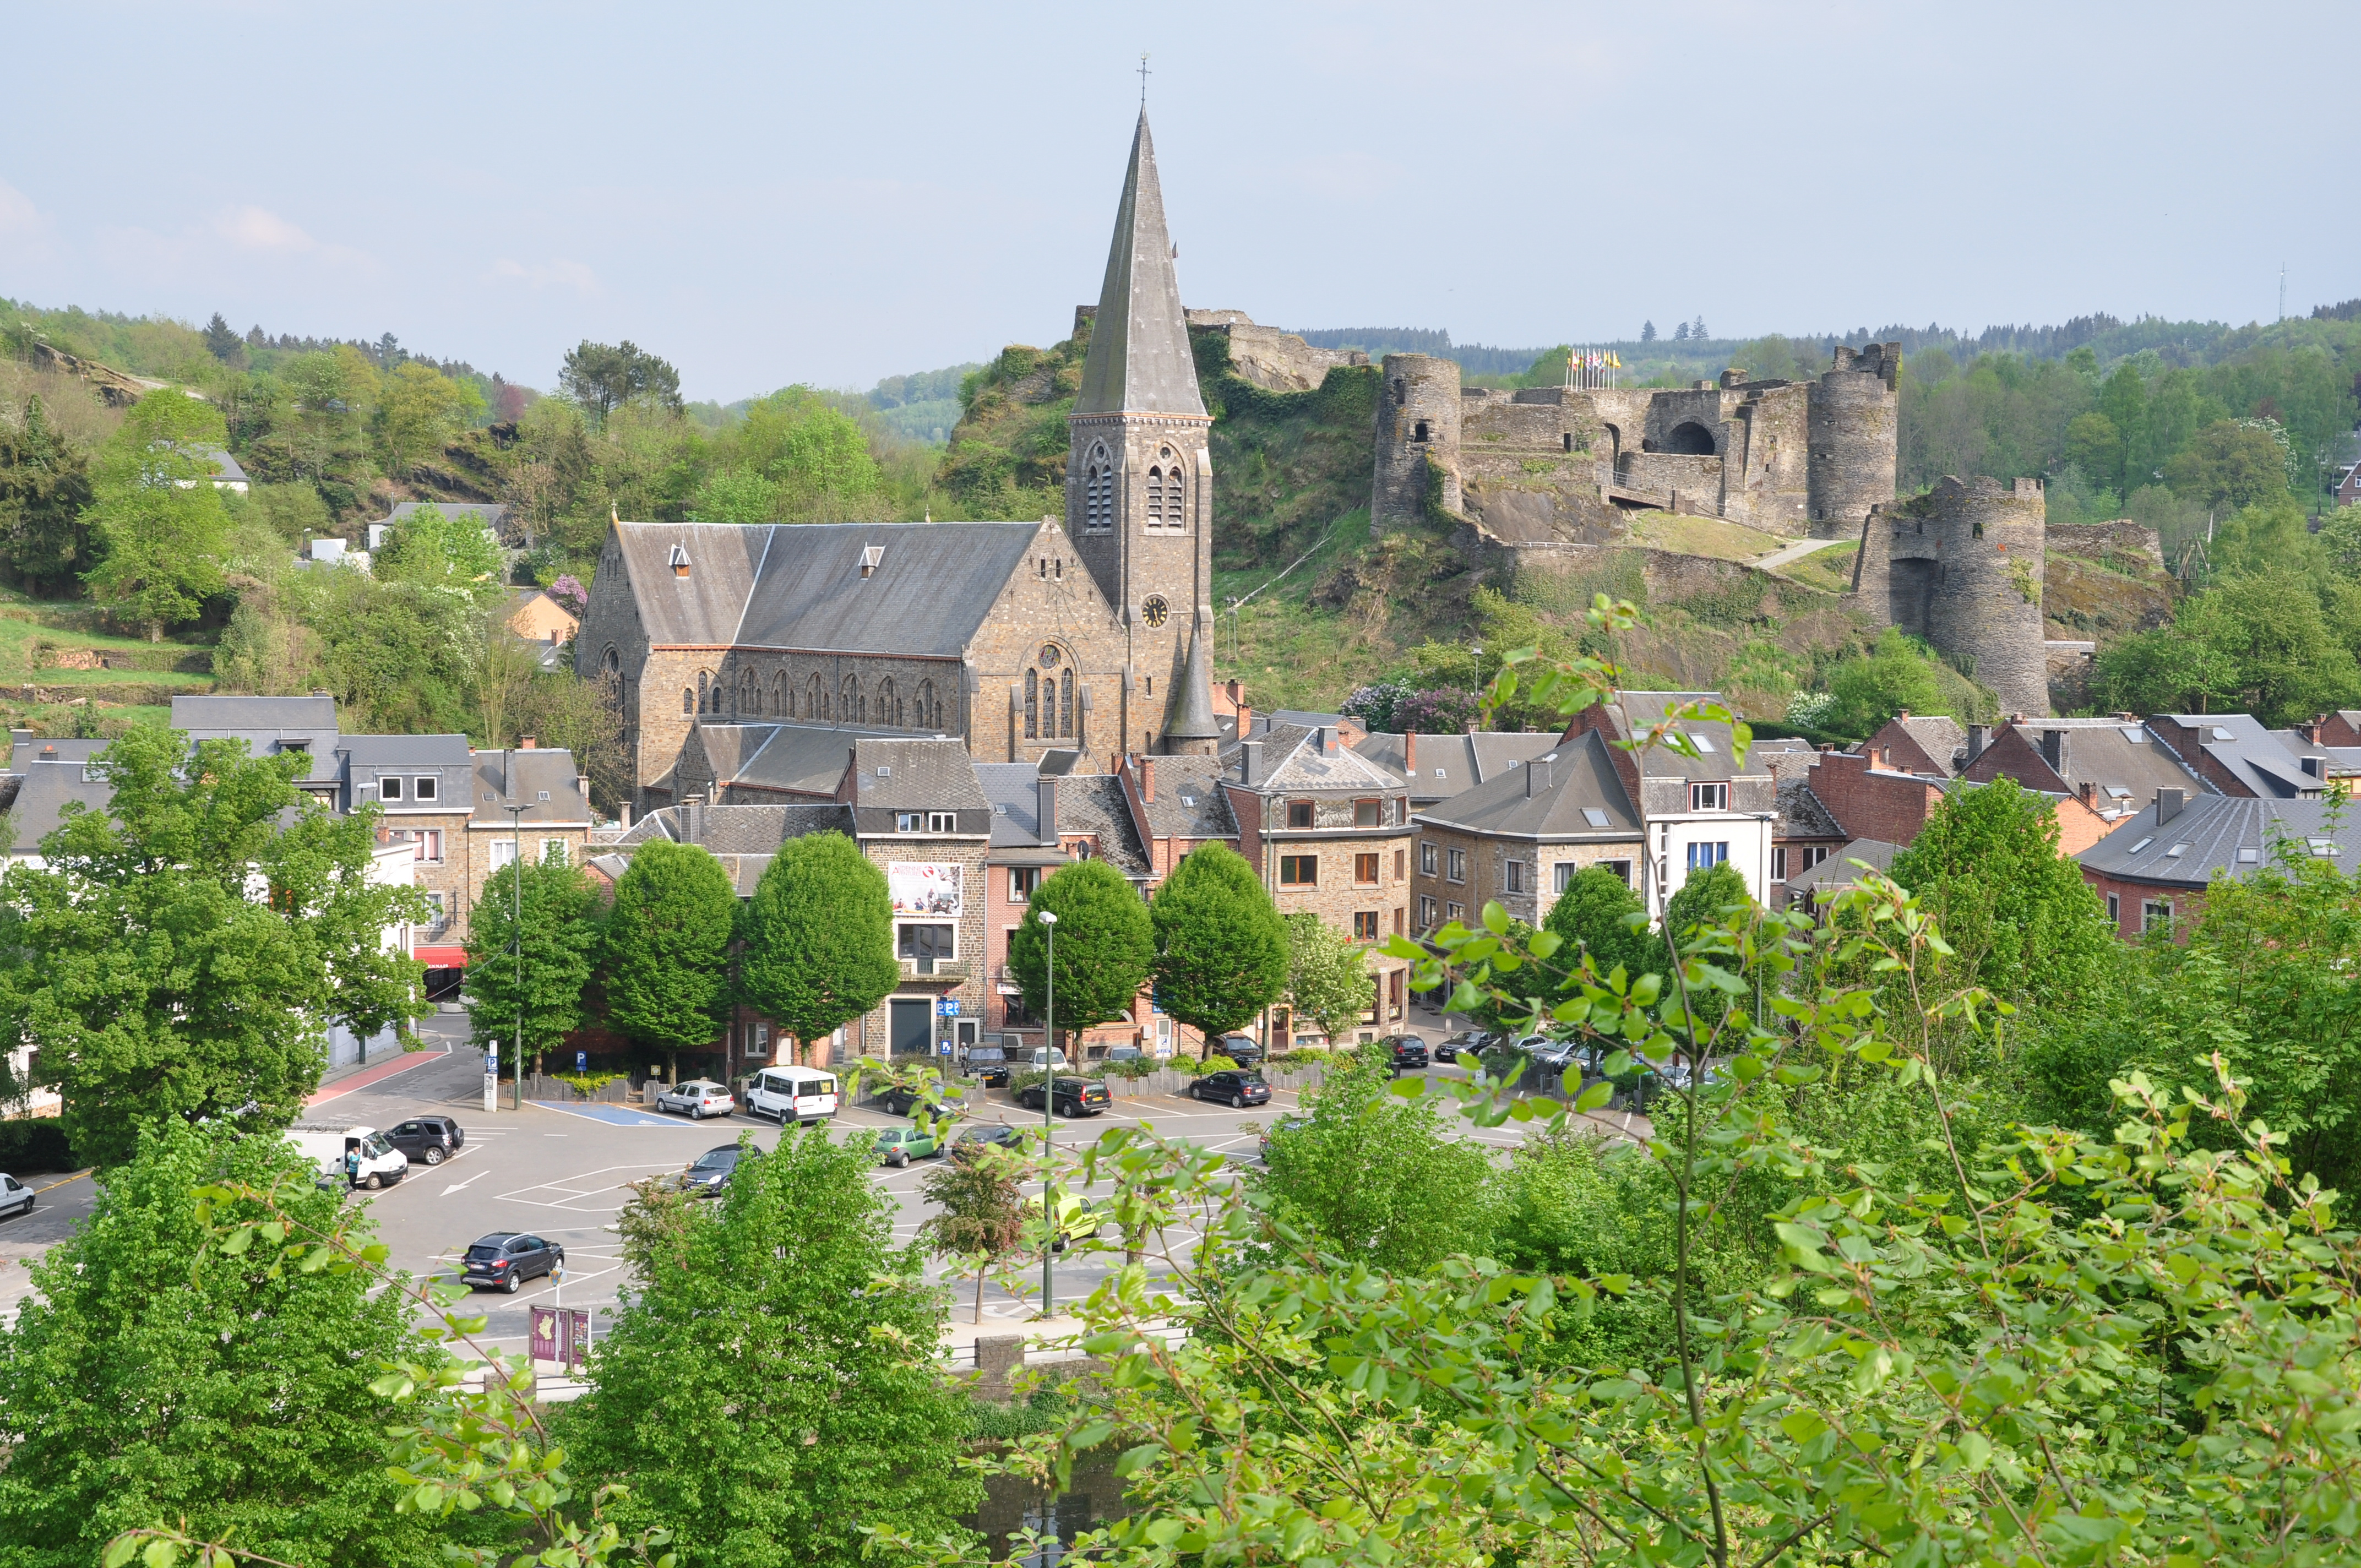 Découvrez le magnifique château de la Roche-en-Ardenne dans la province du Luxembourg